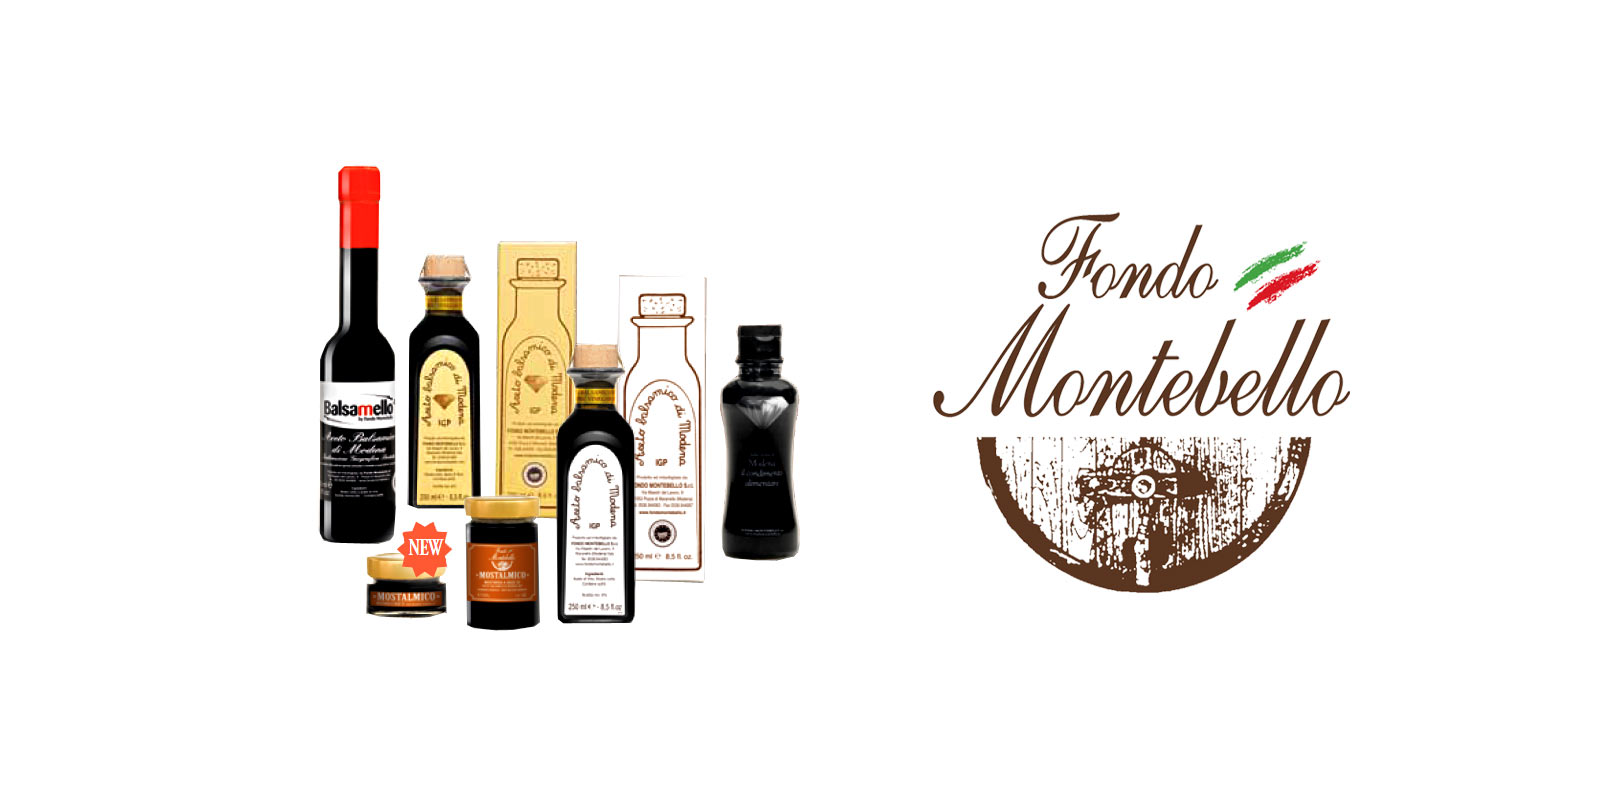 Aceto Balsamico Fondo Montebello Fondo Montebello utilise des methodes de production anciennes et traditionnelles pour produire un excellent vinaigre balsamique de la region de Maranello en Italie.